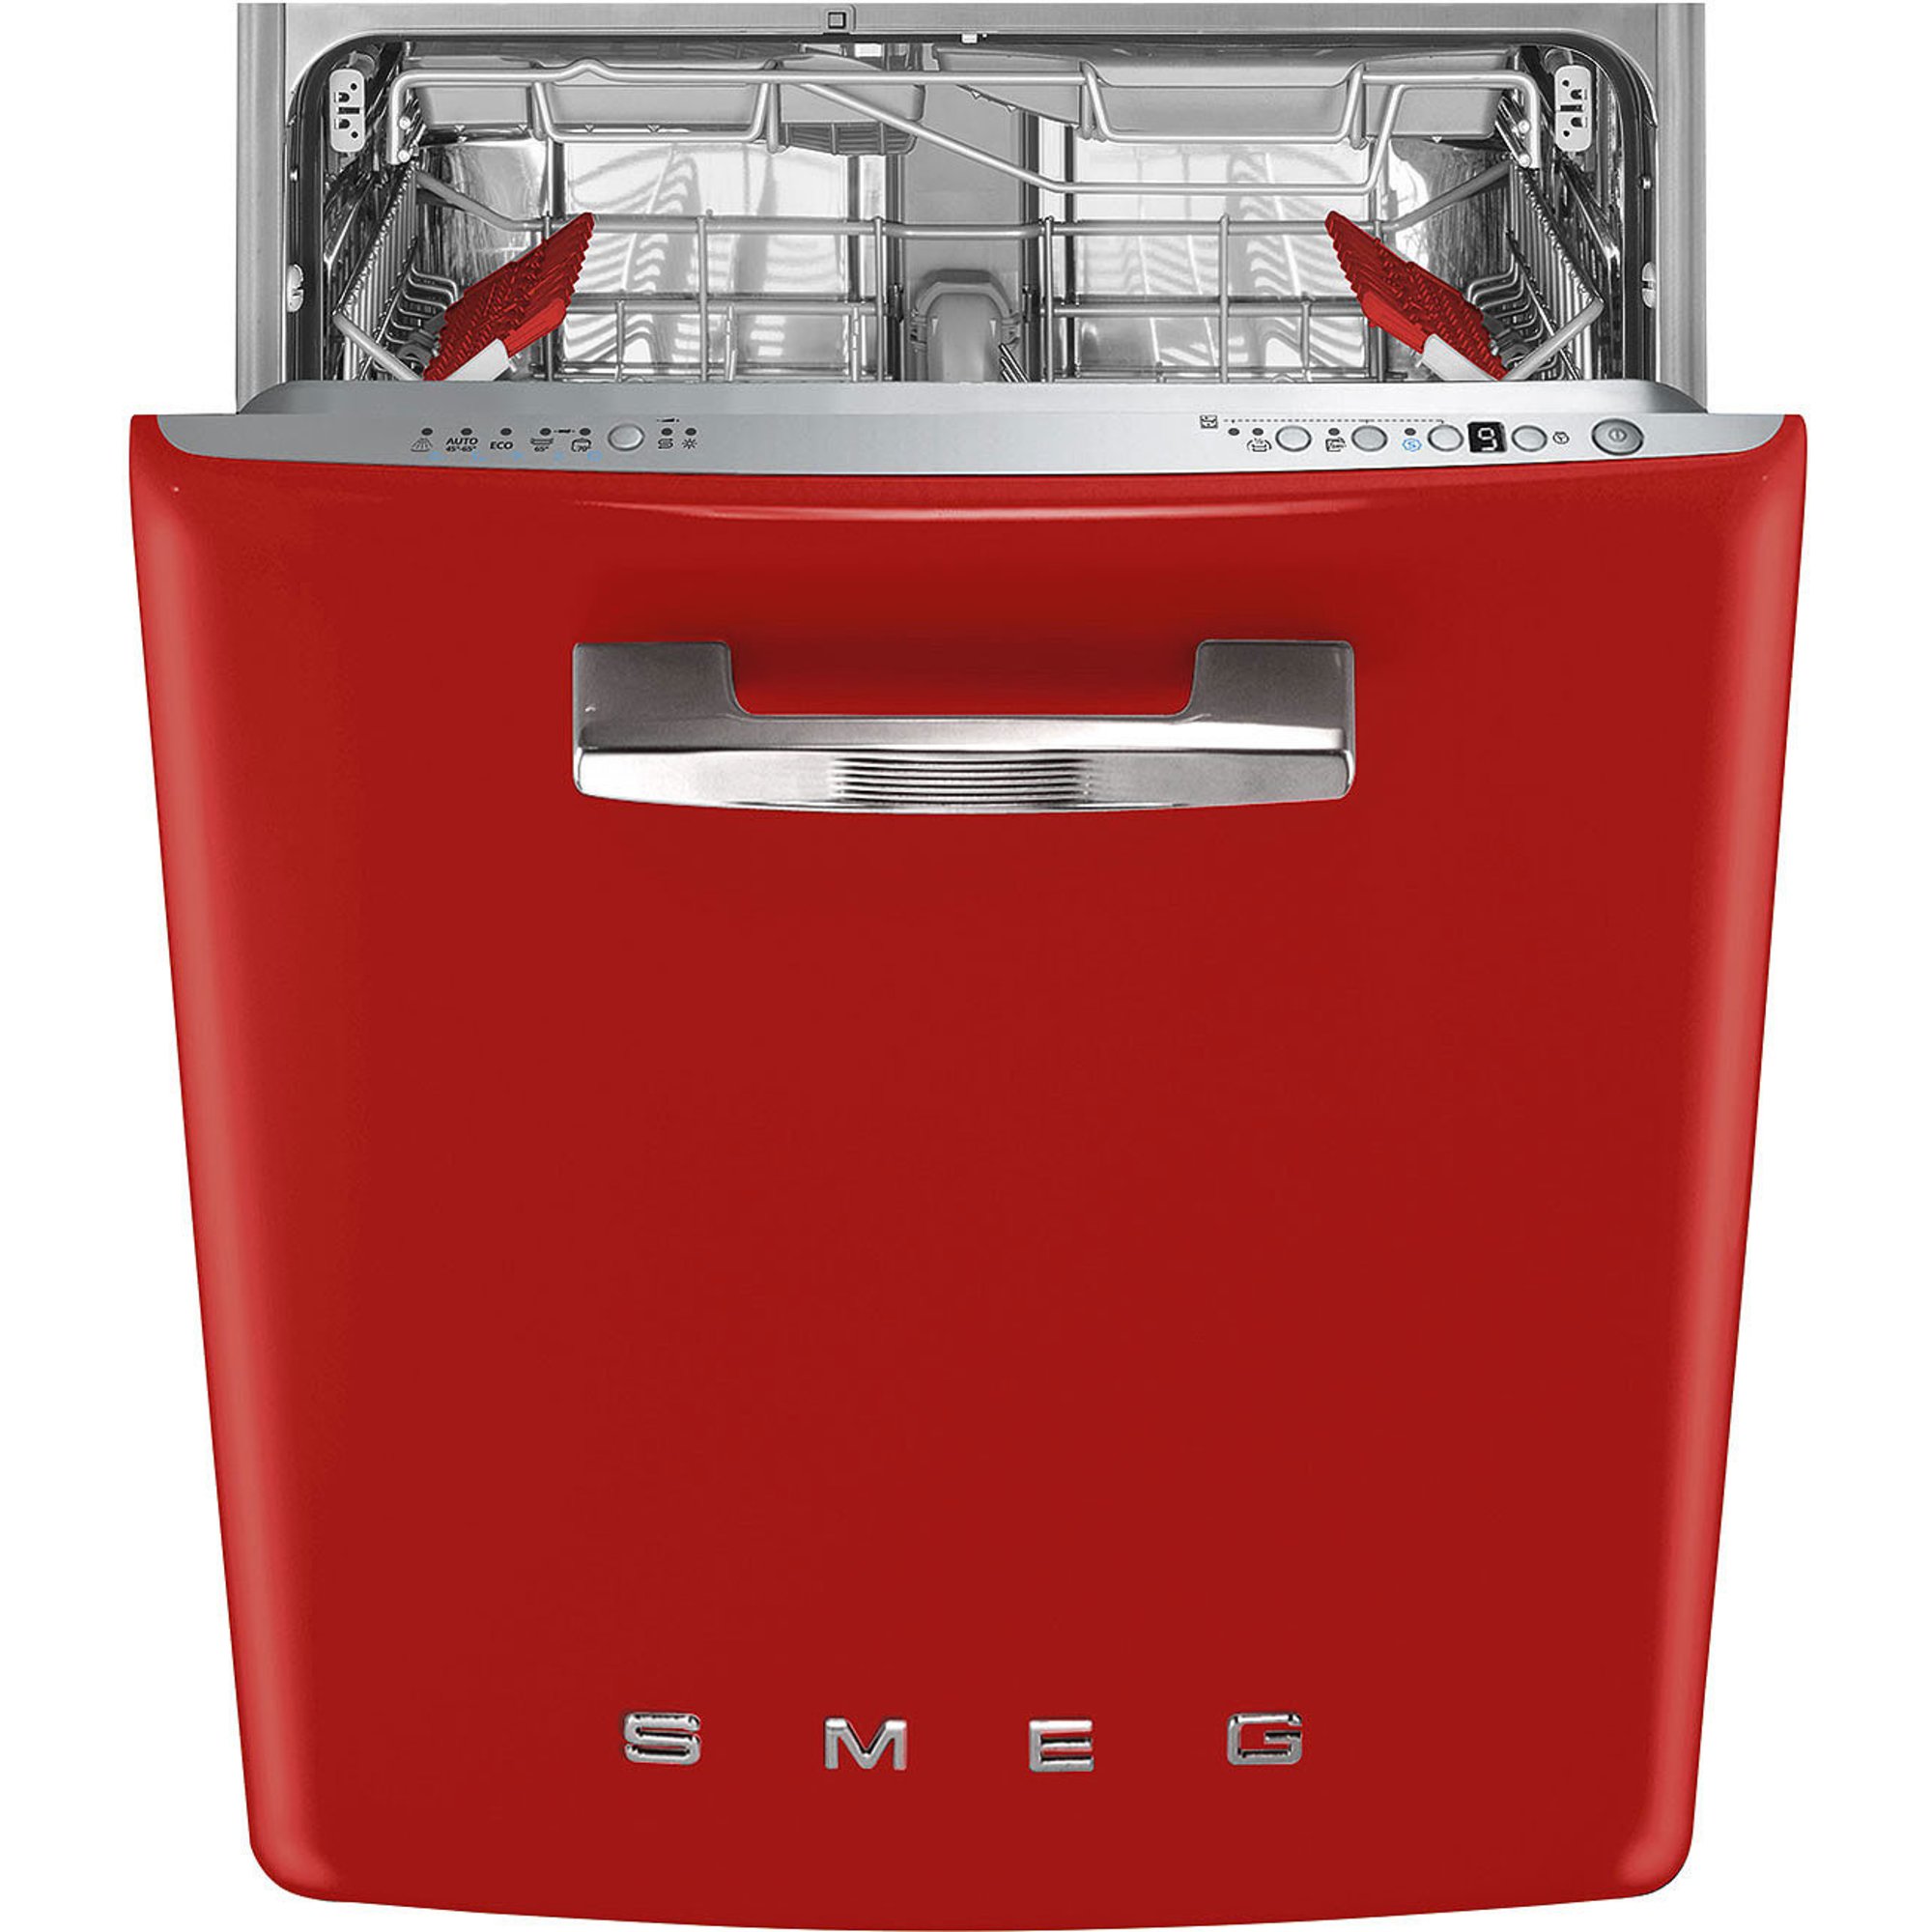 Smeg STFA3 underbygd oppvaskmaskin rød